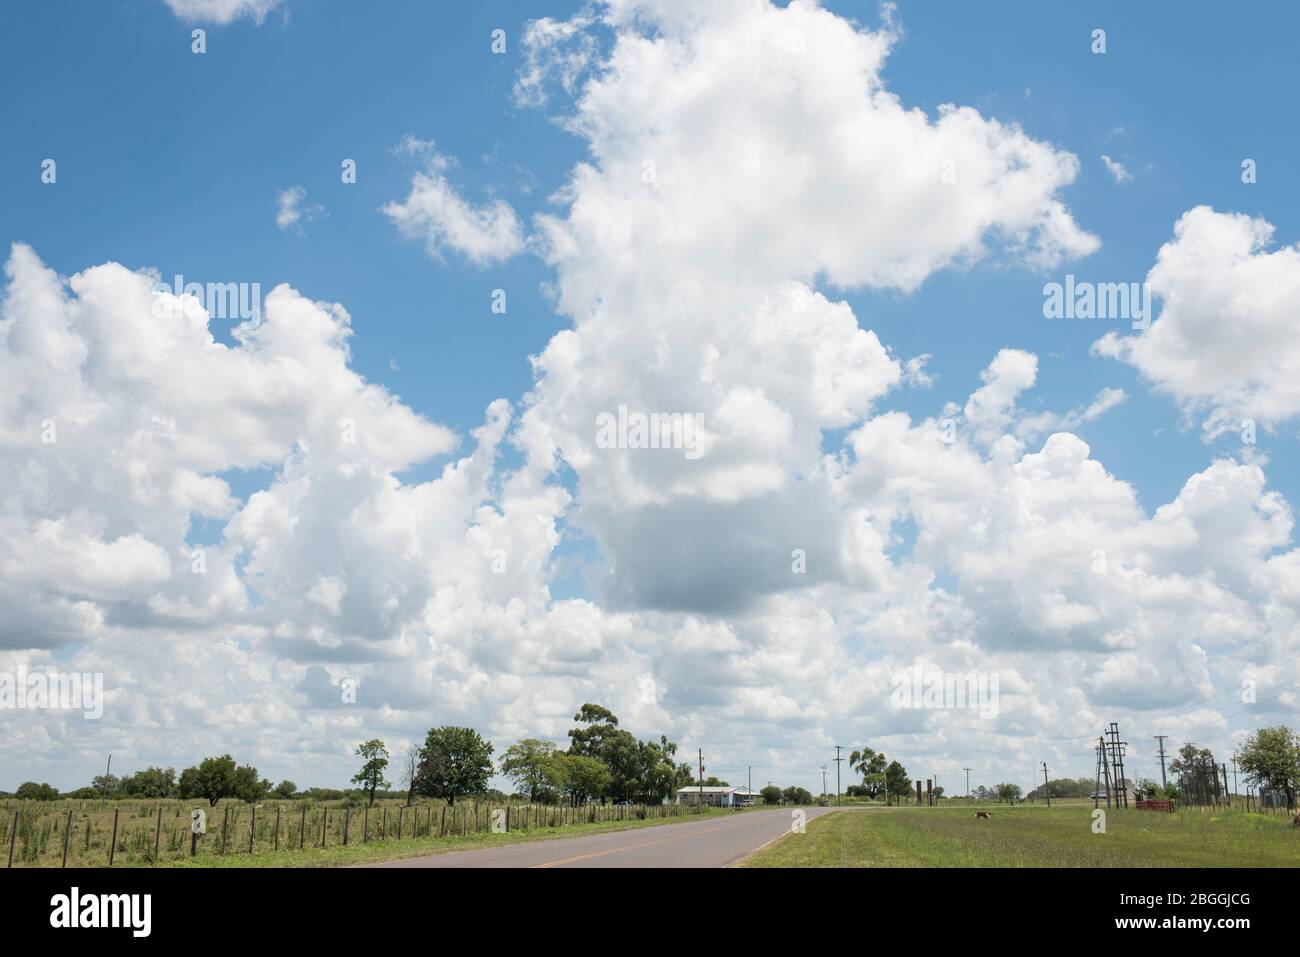 Paesaggio stradale, estate, cielo blu e nuvole bianche Foto Stock